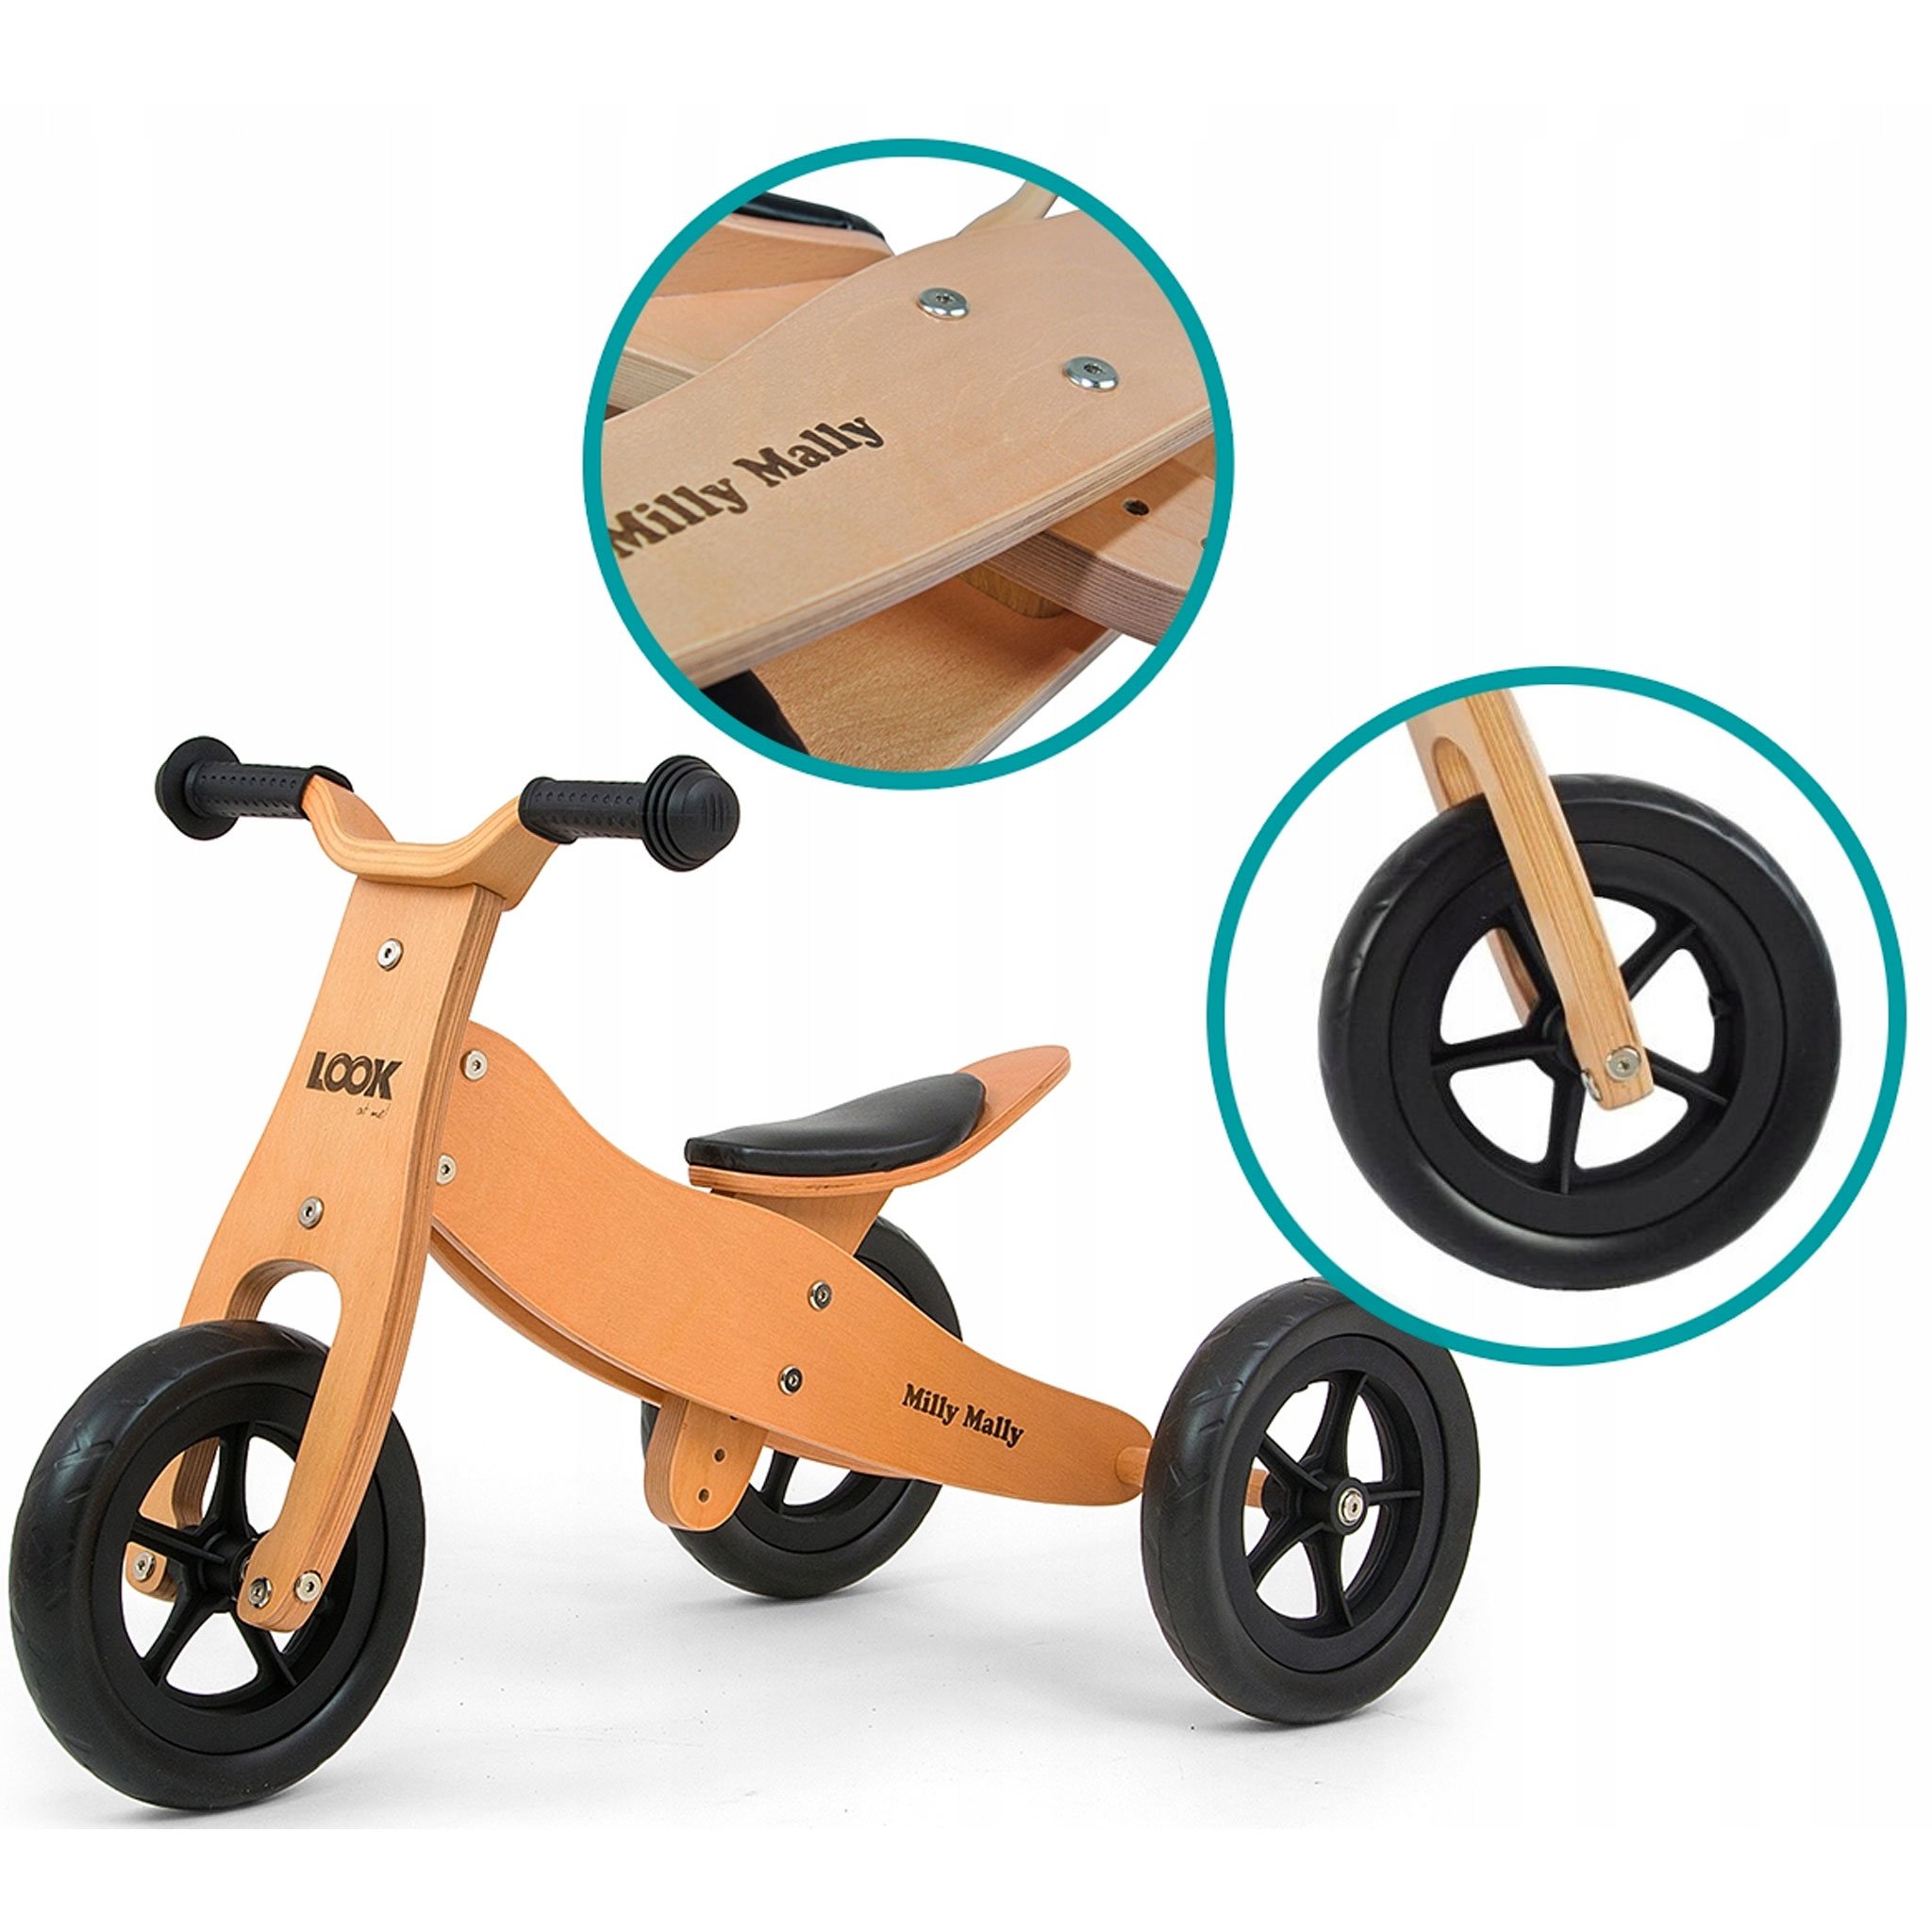 PM2770-triciclo-legno-cavalcabile-ruote-bici-senza-pedali-bambini-equilibrio-balance-bike-giochi-esterno-mobilita-crescita-legno-betulla-all-terrain-trasforma-lato-casa-prodotto.jpg